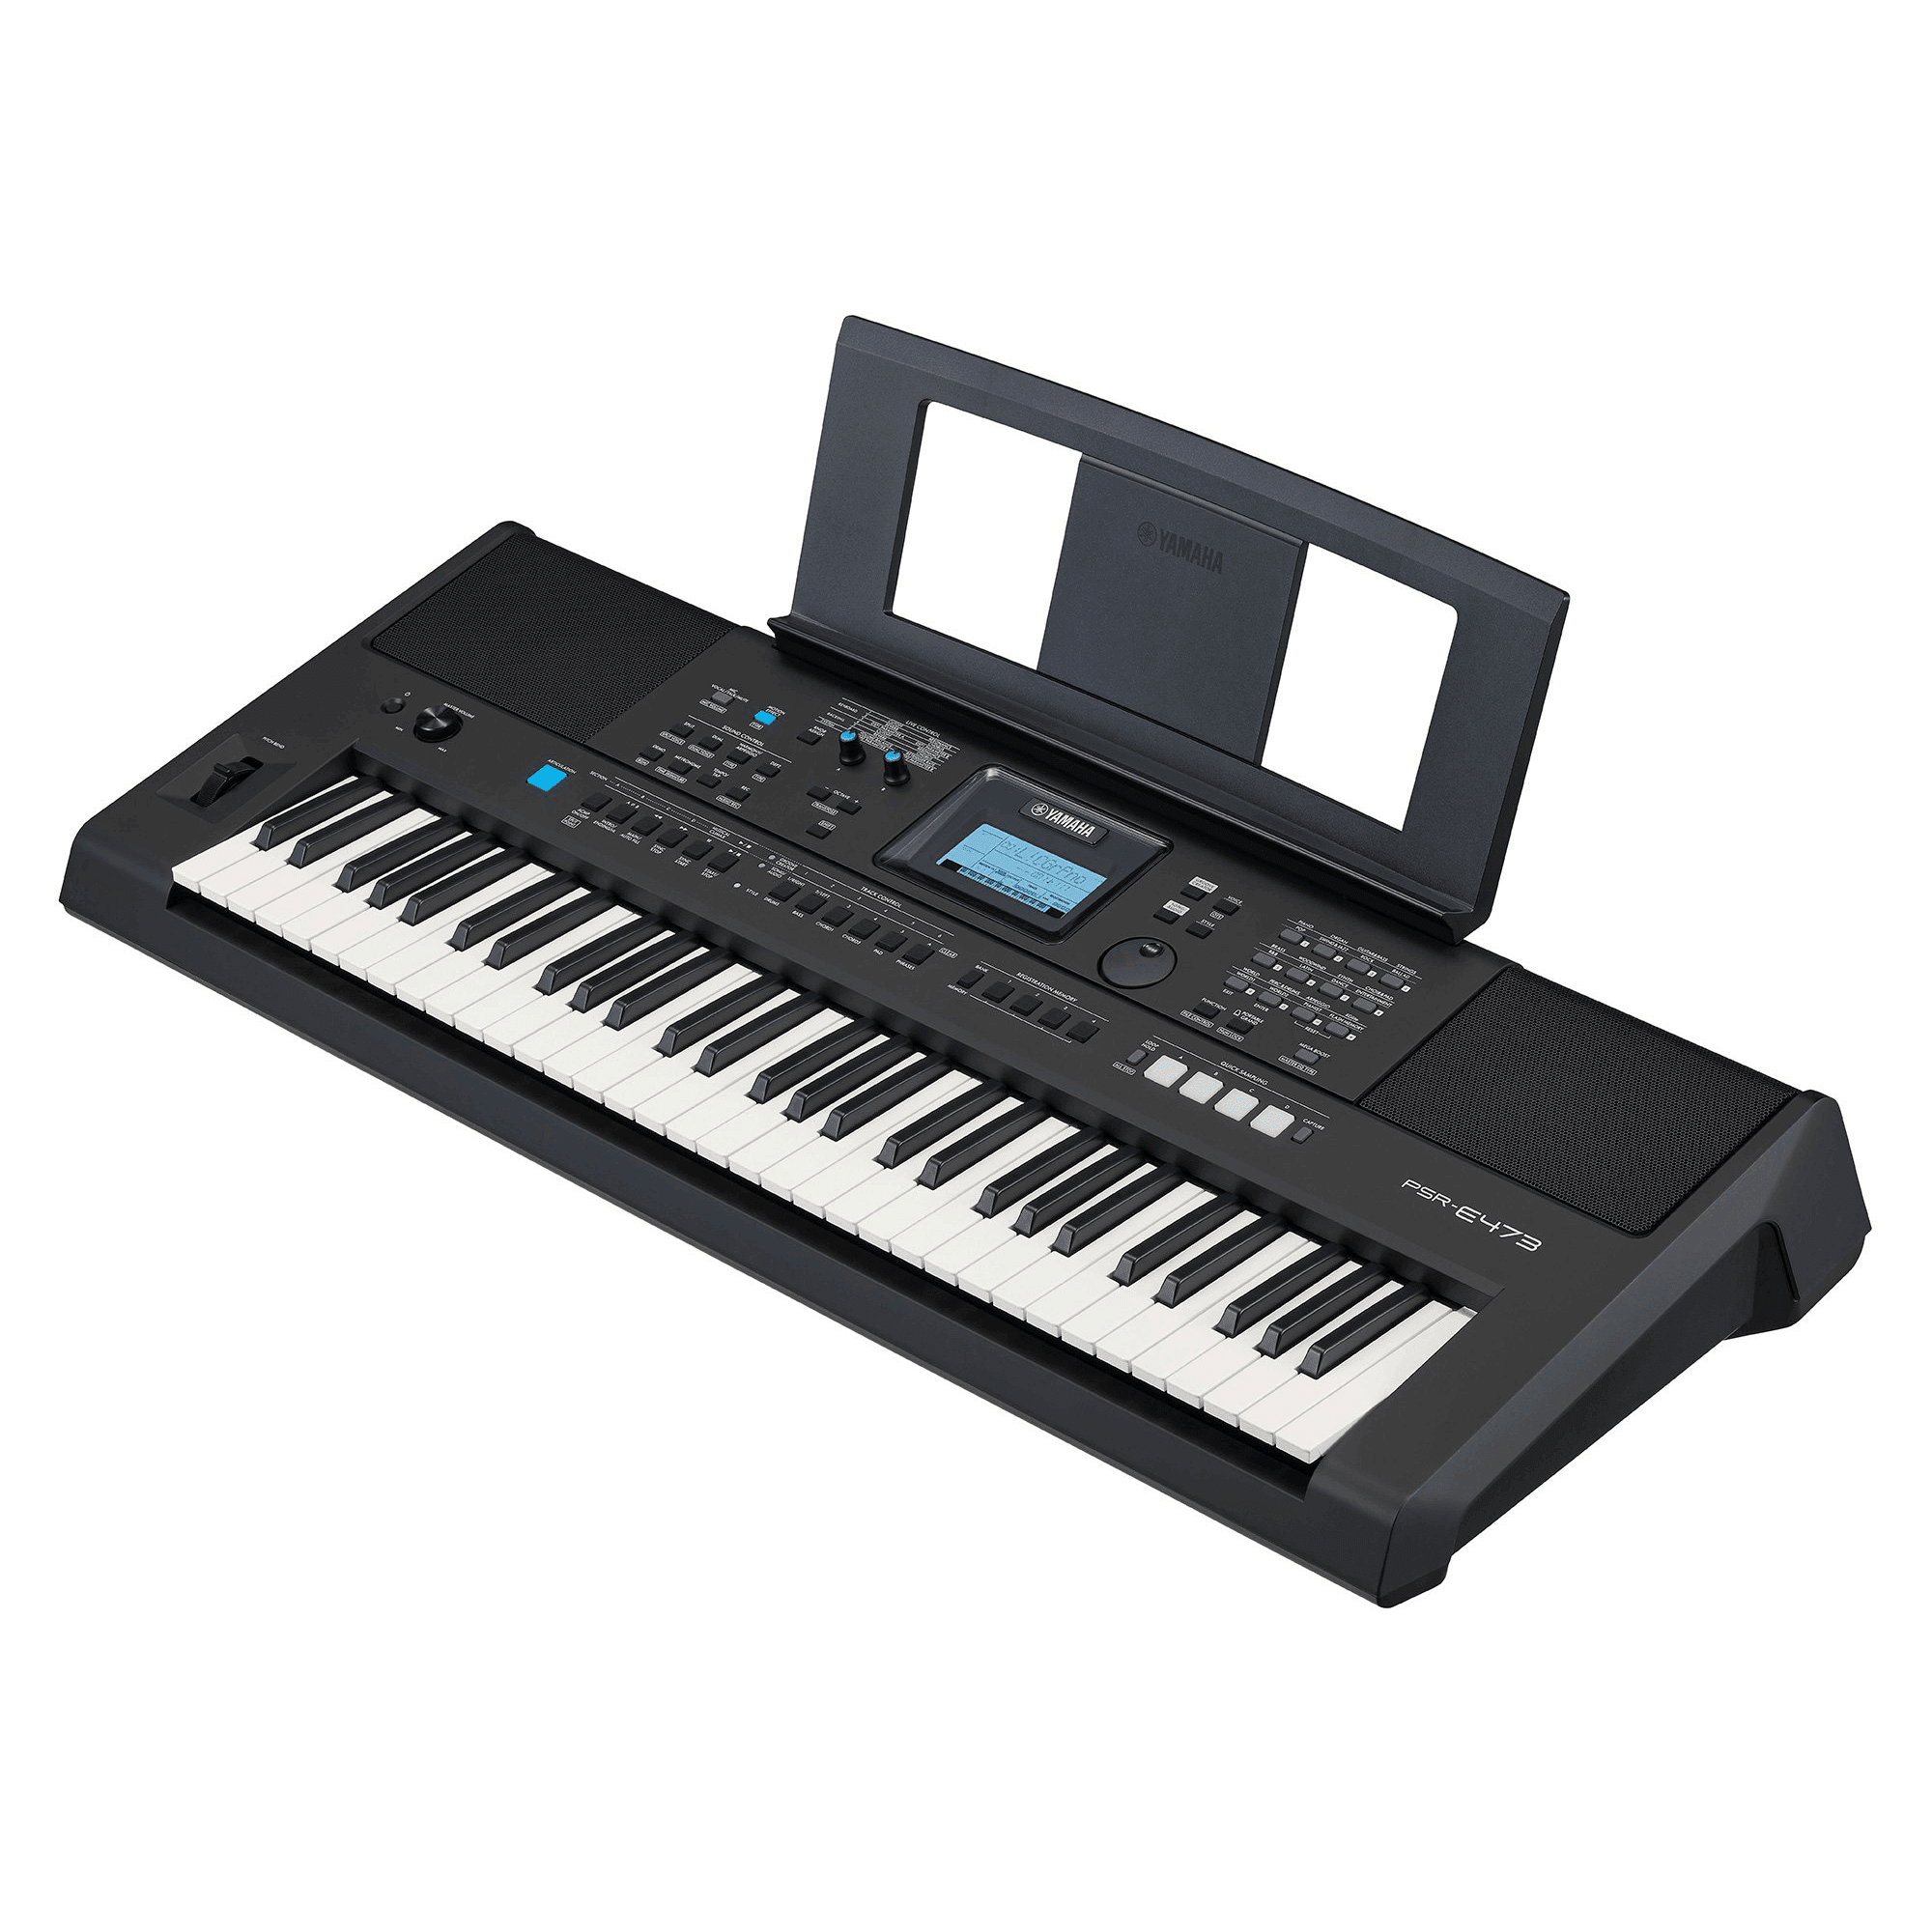 PSRE473 Digital Keyboard - Keyboards by Yamaha at Muso's Stuff